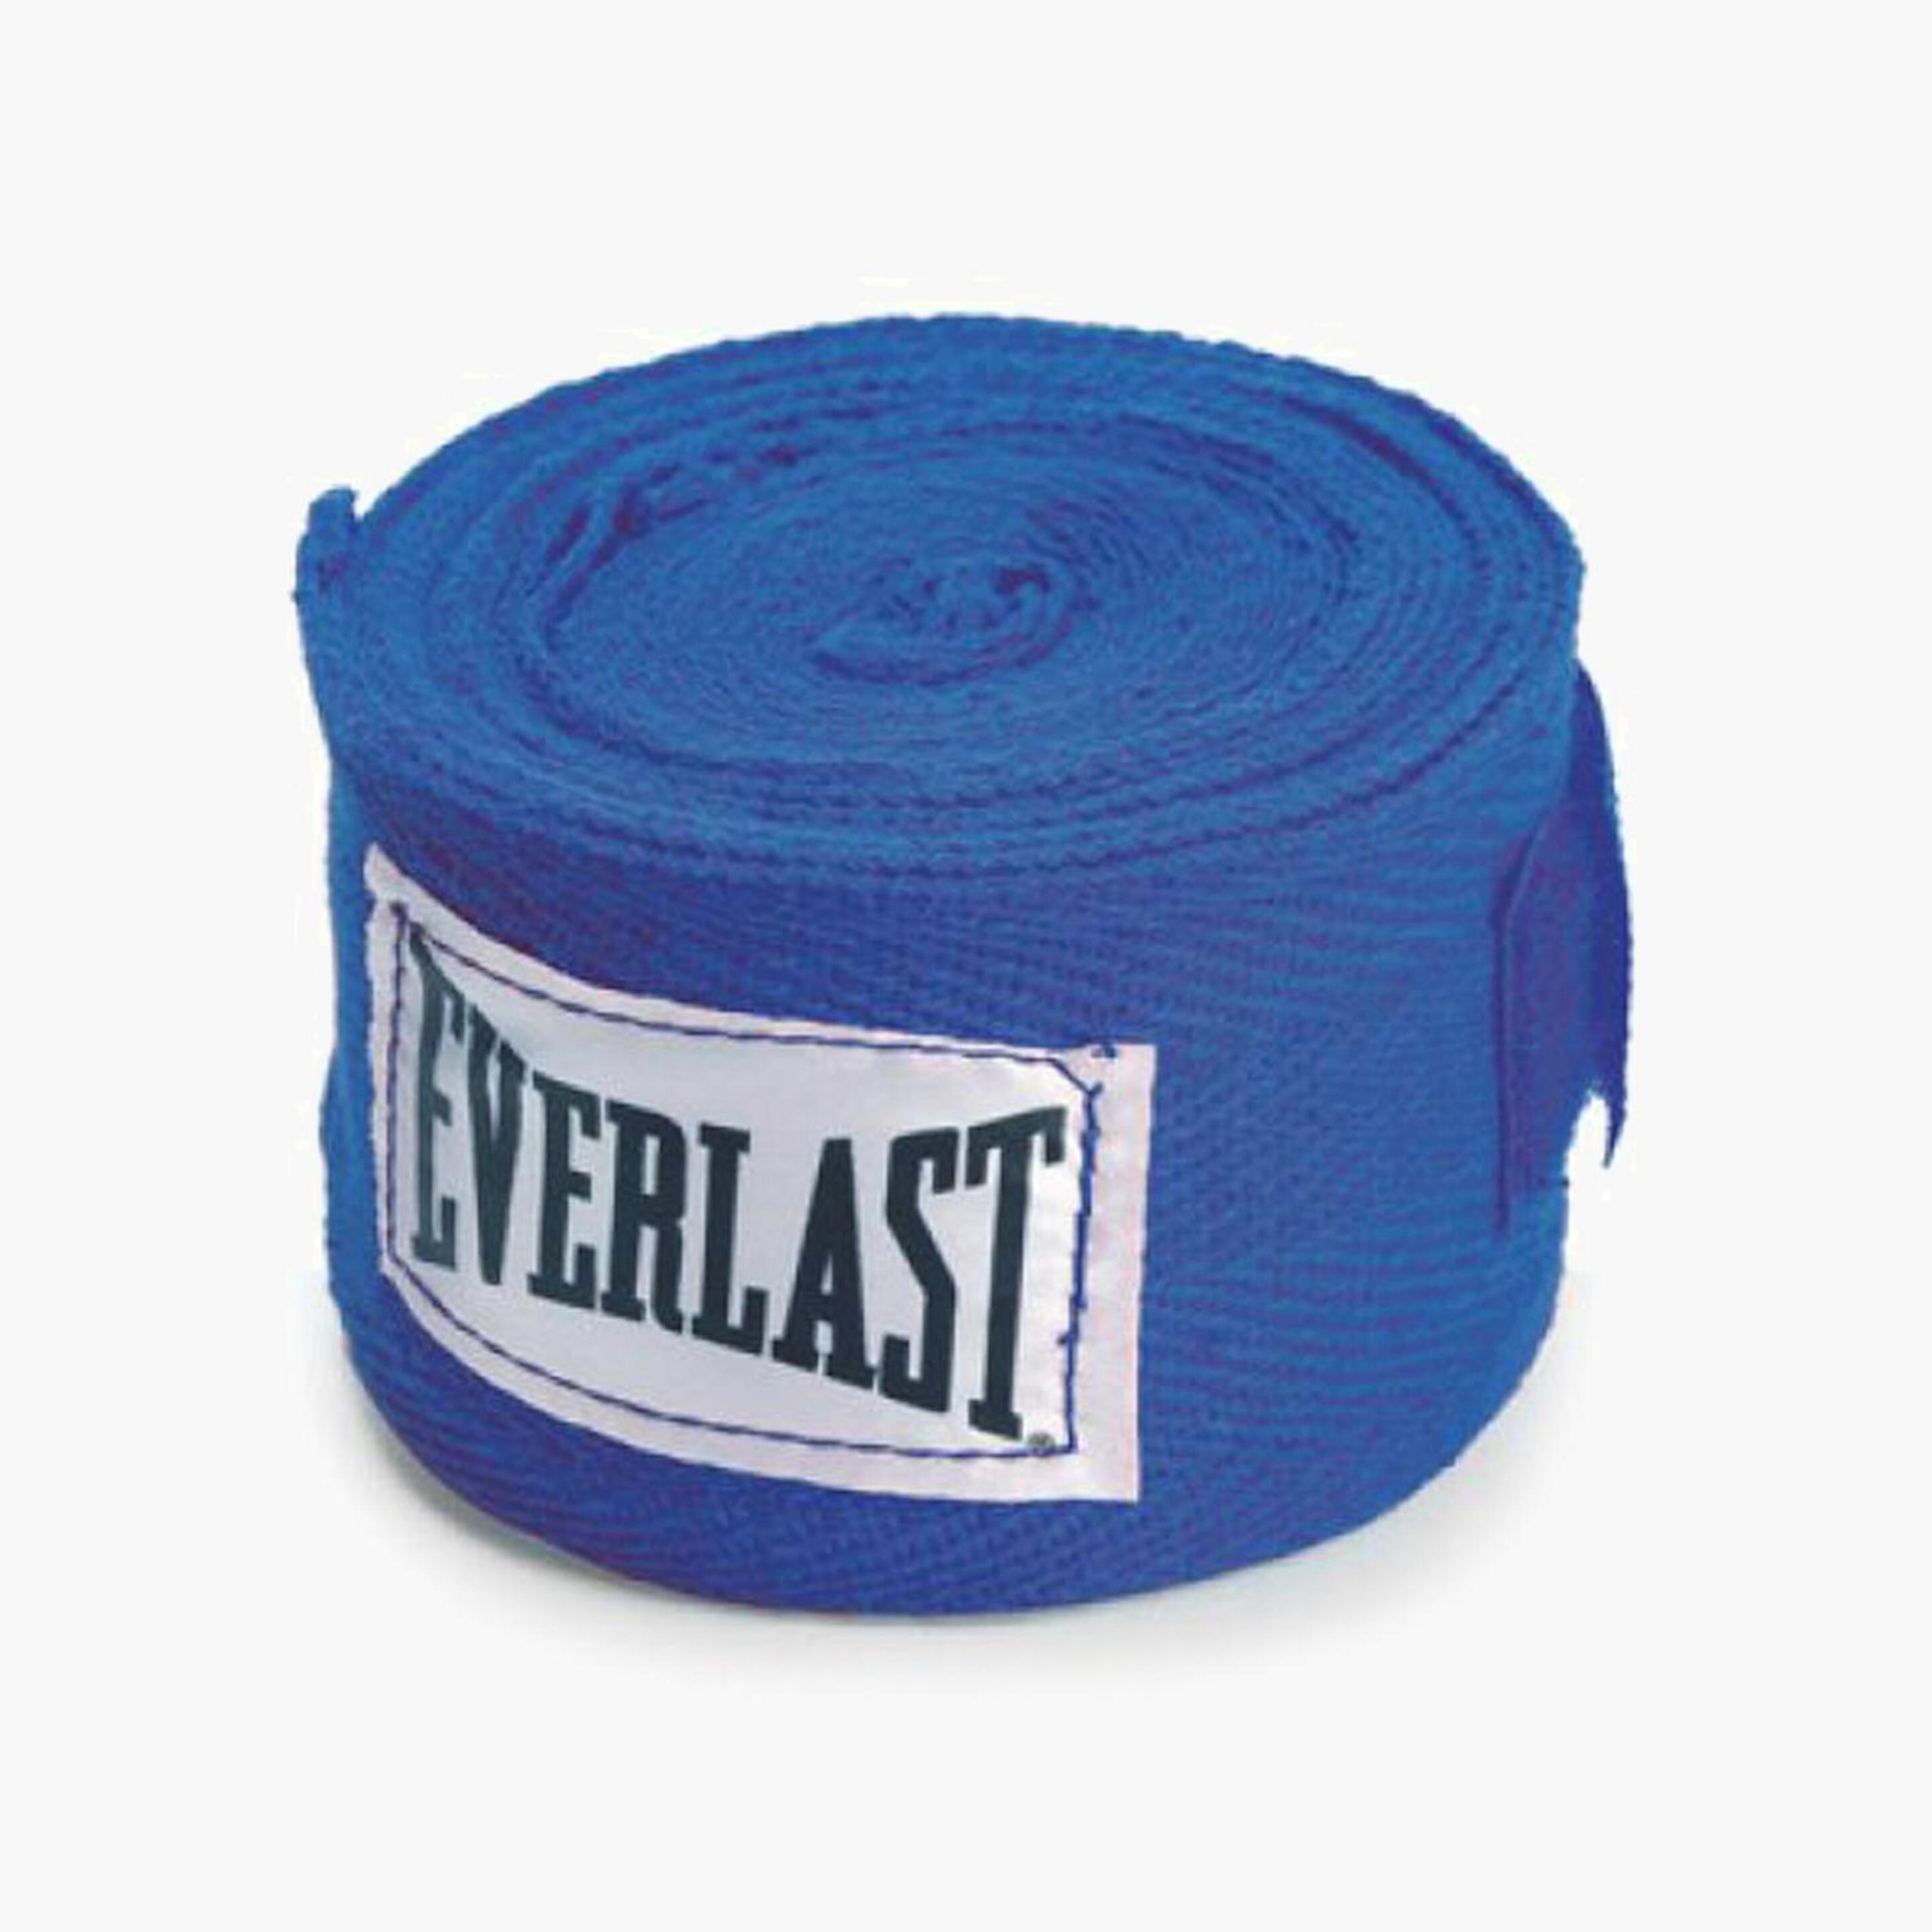 Venda Boxeo Everlast - azul - Accesorios Boxeo